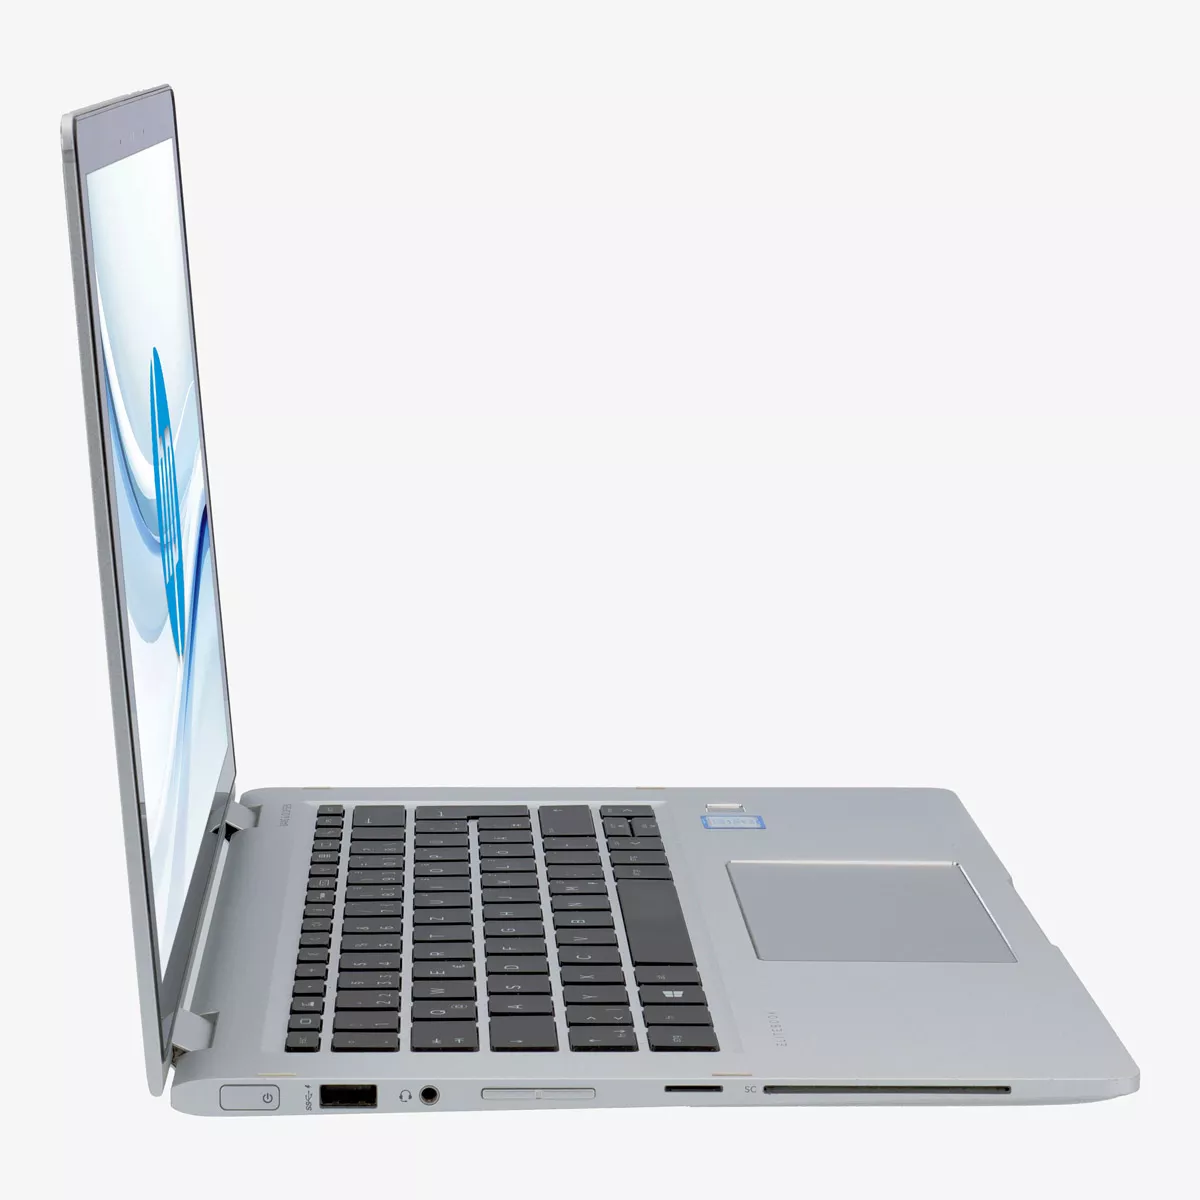 HP EliteBook x360 830 G6 Core i7 8665U 16 GB 240 GB M.2 nVME SSD Touch Webcam A+